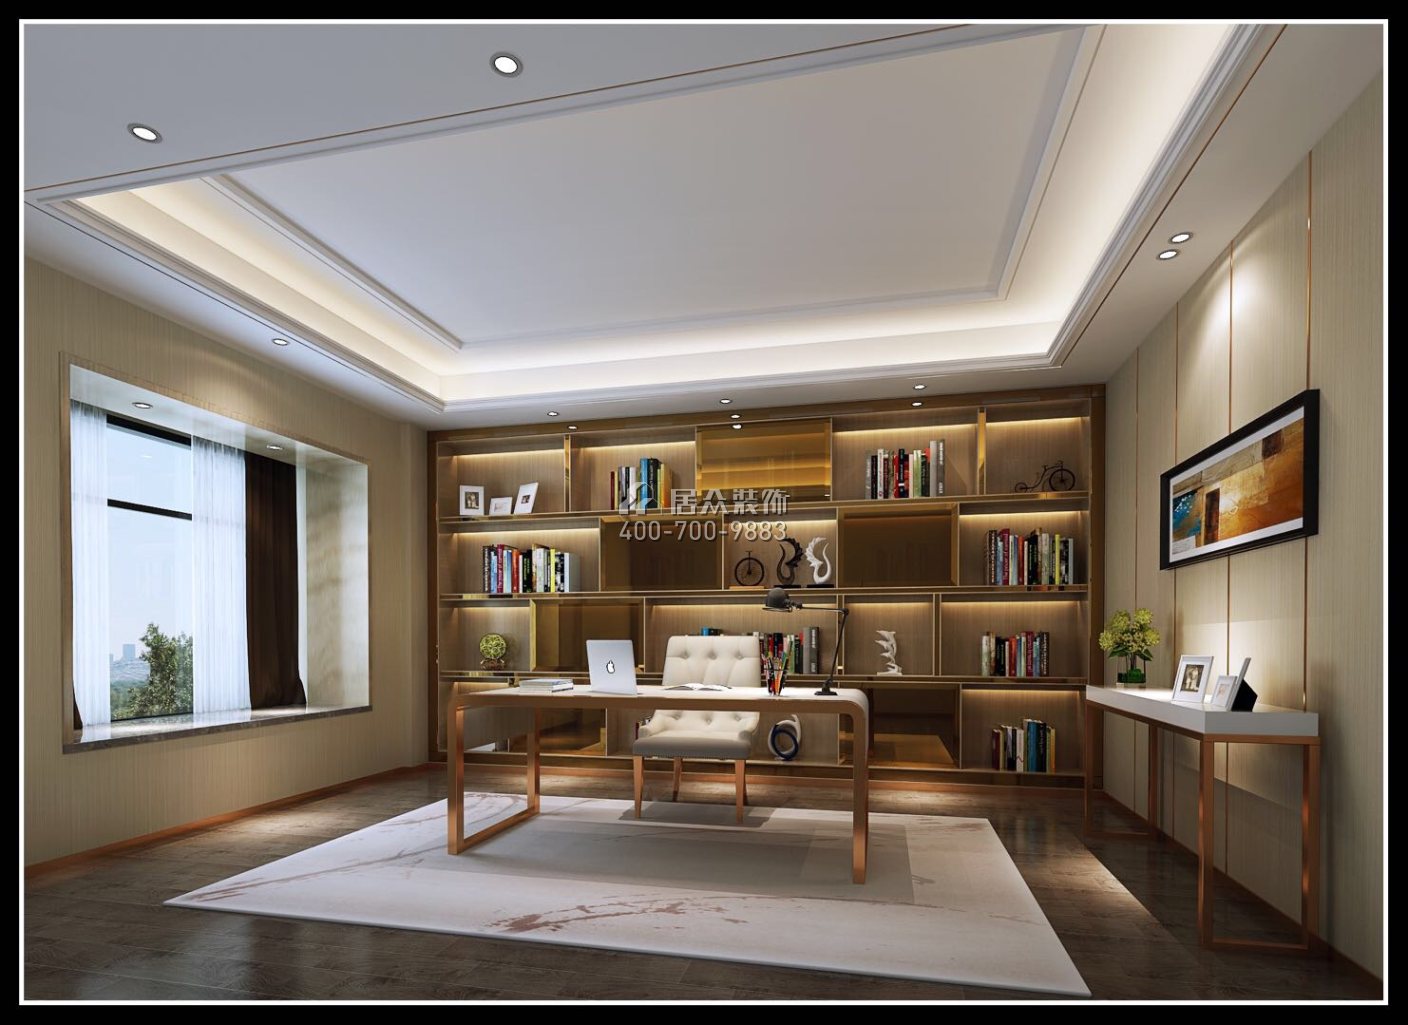 海逸豪庭御峰321平方米现代简约风格别墅户型书房装修效果图